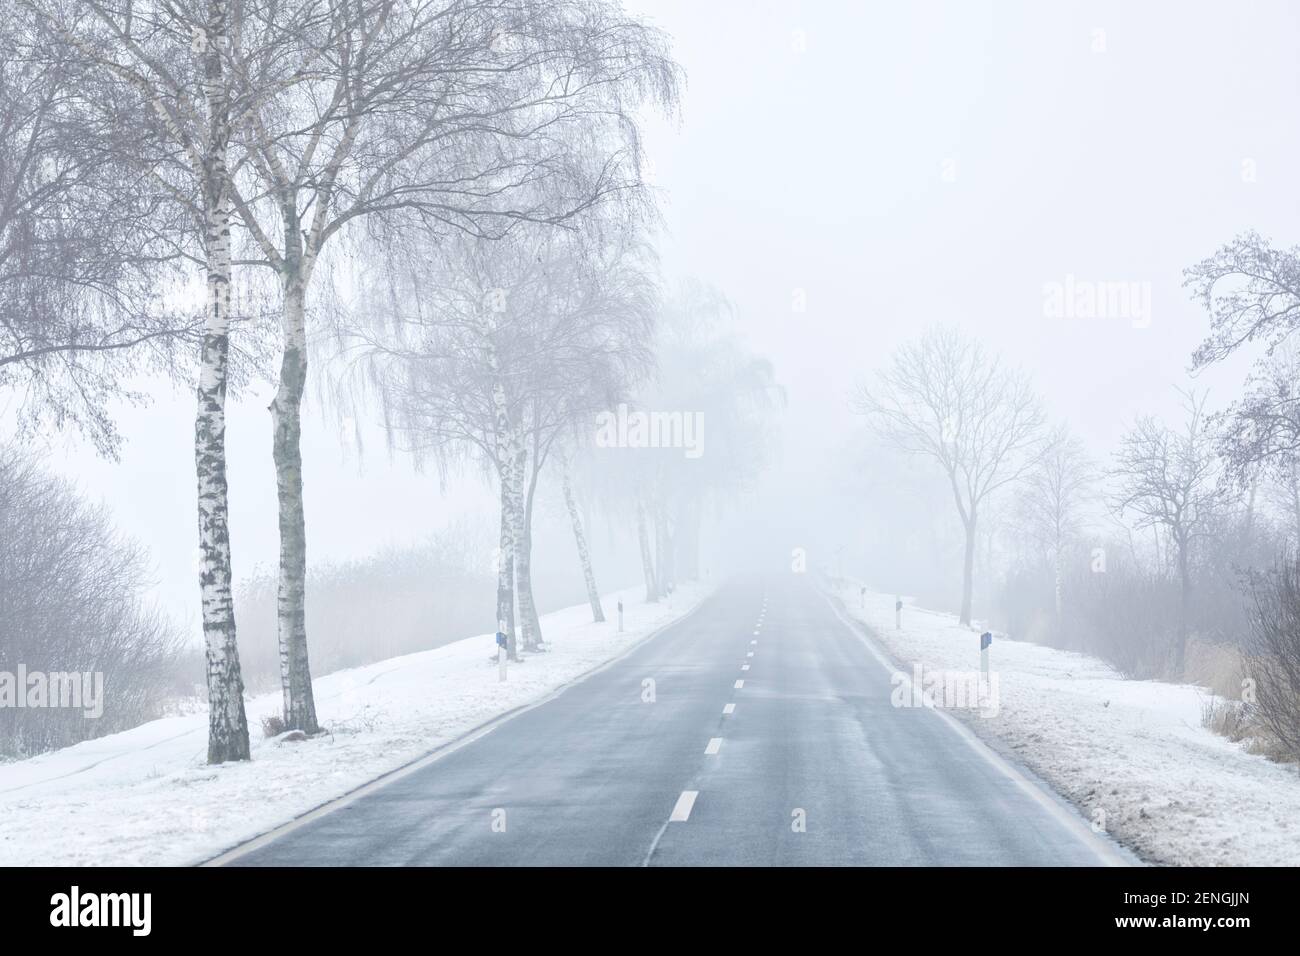 Empty rural road in winter, vanishing in mist Stock Photo